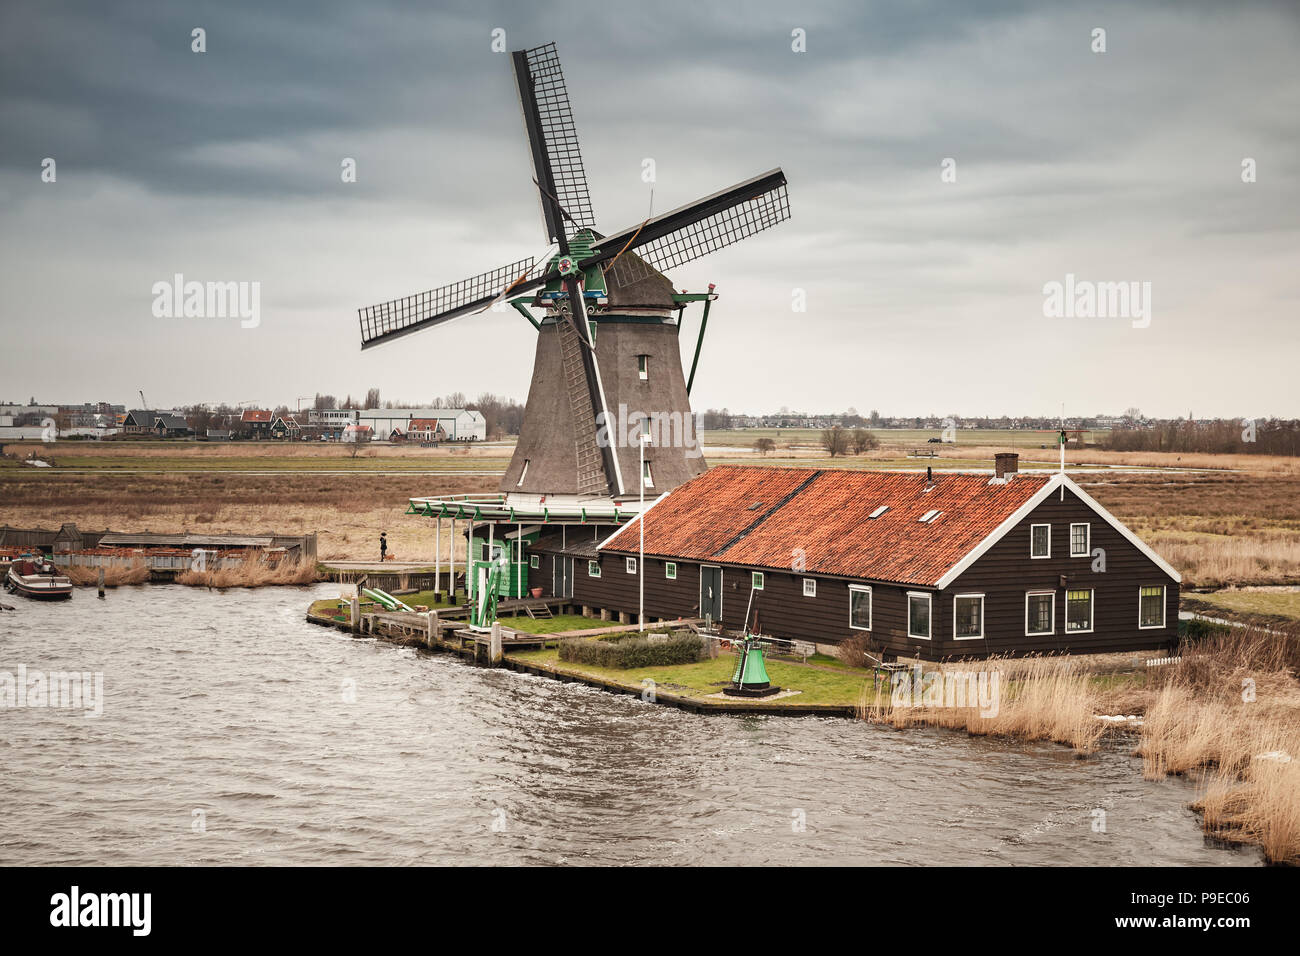 Mühle am Fluss Zaan Küste, Zaanse Schans Stadt, beliebten touristischen Attraktionen der Niederlande. Vorort von Amsterdam Stockfoto